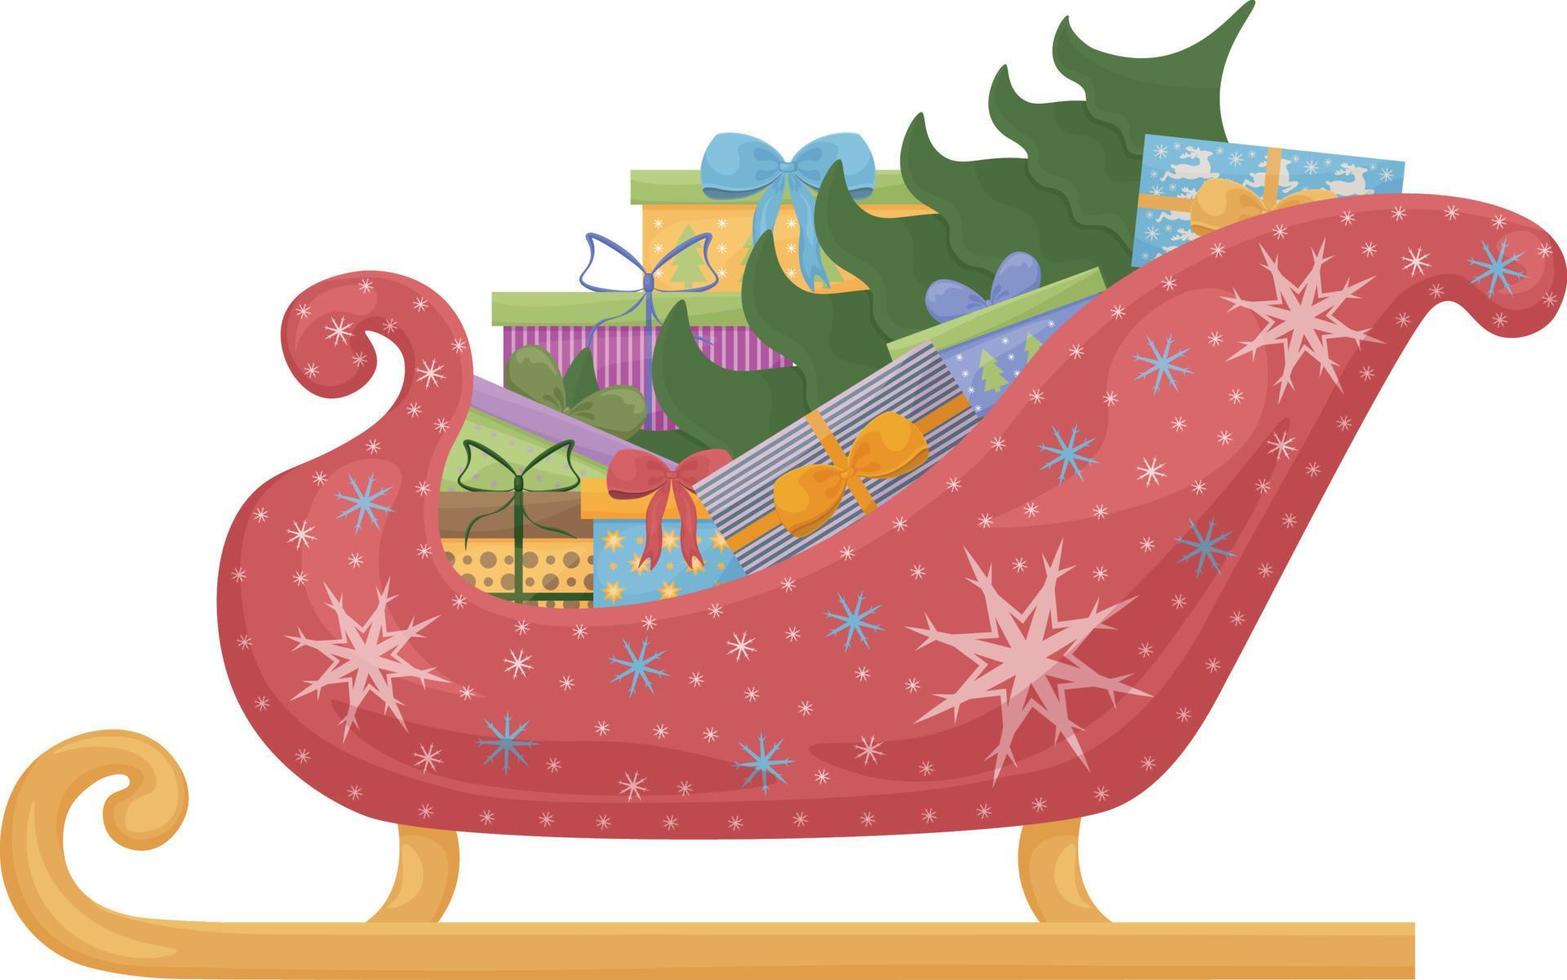 trineo de santa claus con cajas de regalo y un árbol de navidad. trineo rojo brillante de santa s decorado con copos de nieve blancos y azules. transporte navideño de santa claus. ilustración vectorial aislada vector